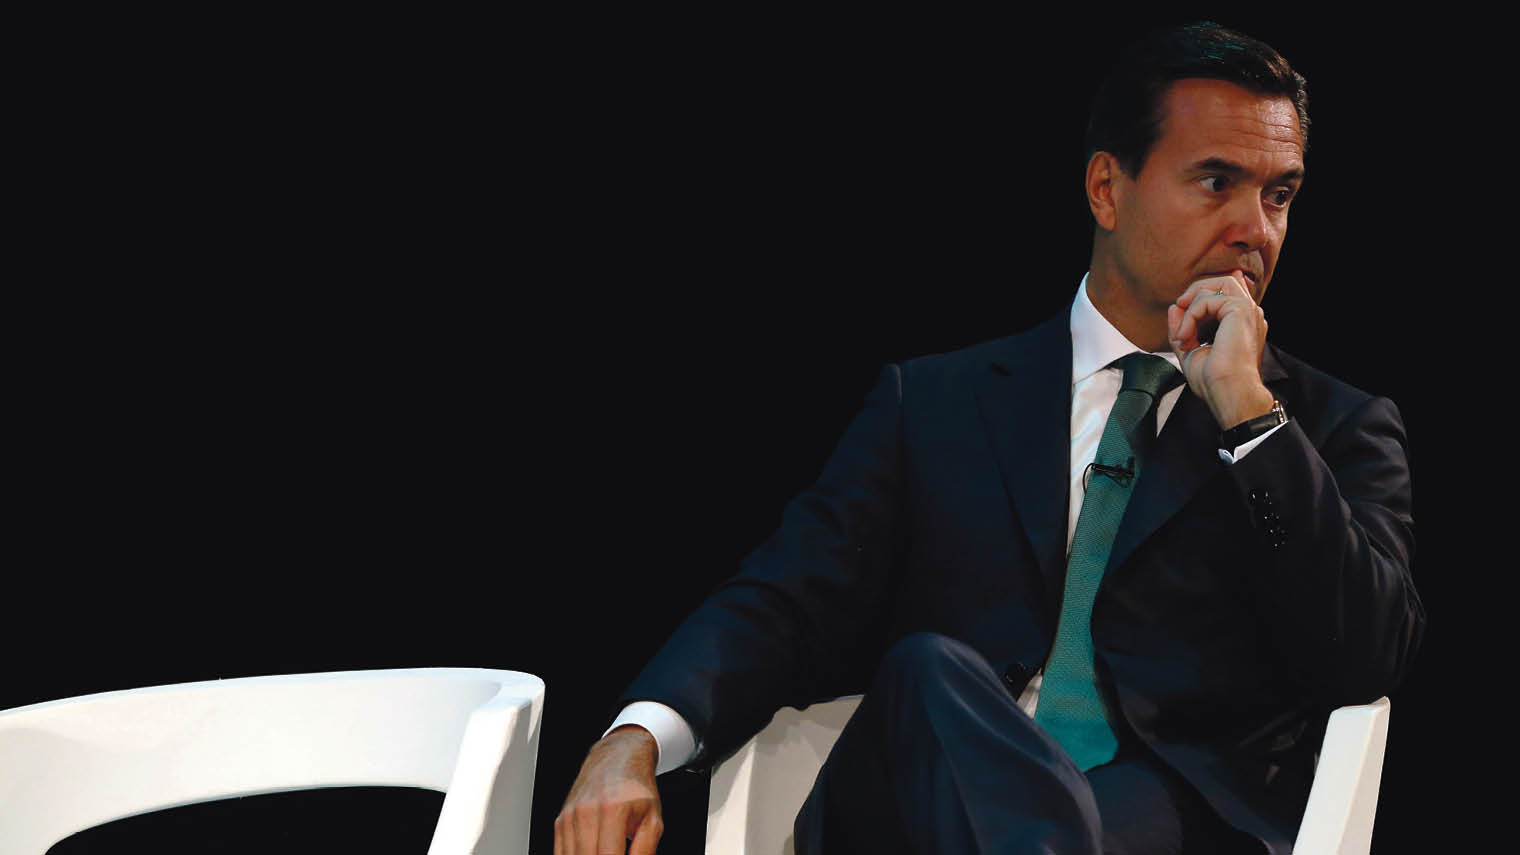 António HortaOsório, CEO of Lloyds Banking Group